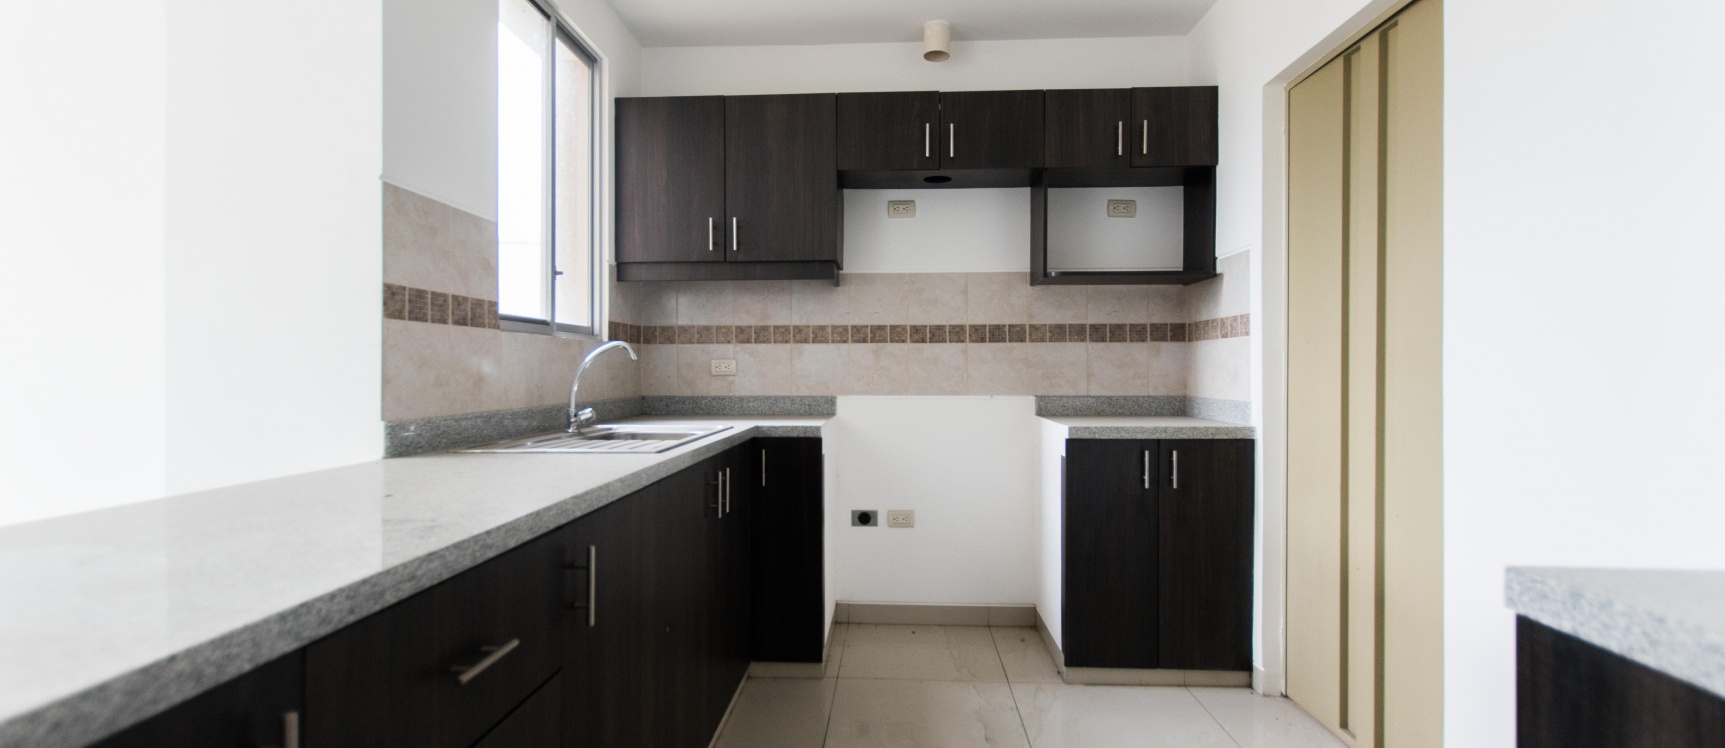 GeoBienes - Departamento de 2 dormitorios en planta baja en venta en La Romareda - Plusvalia Guayaquil Casas de venta y alquiler Inmobiliaria Ecuador